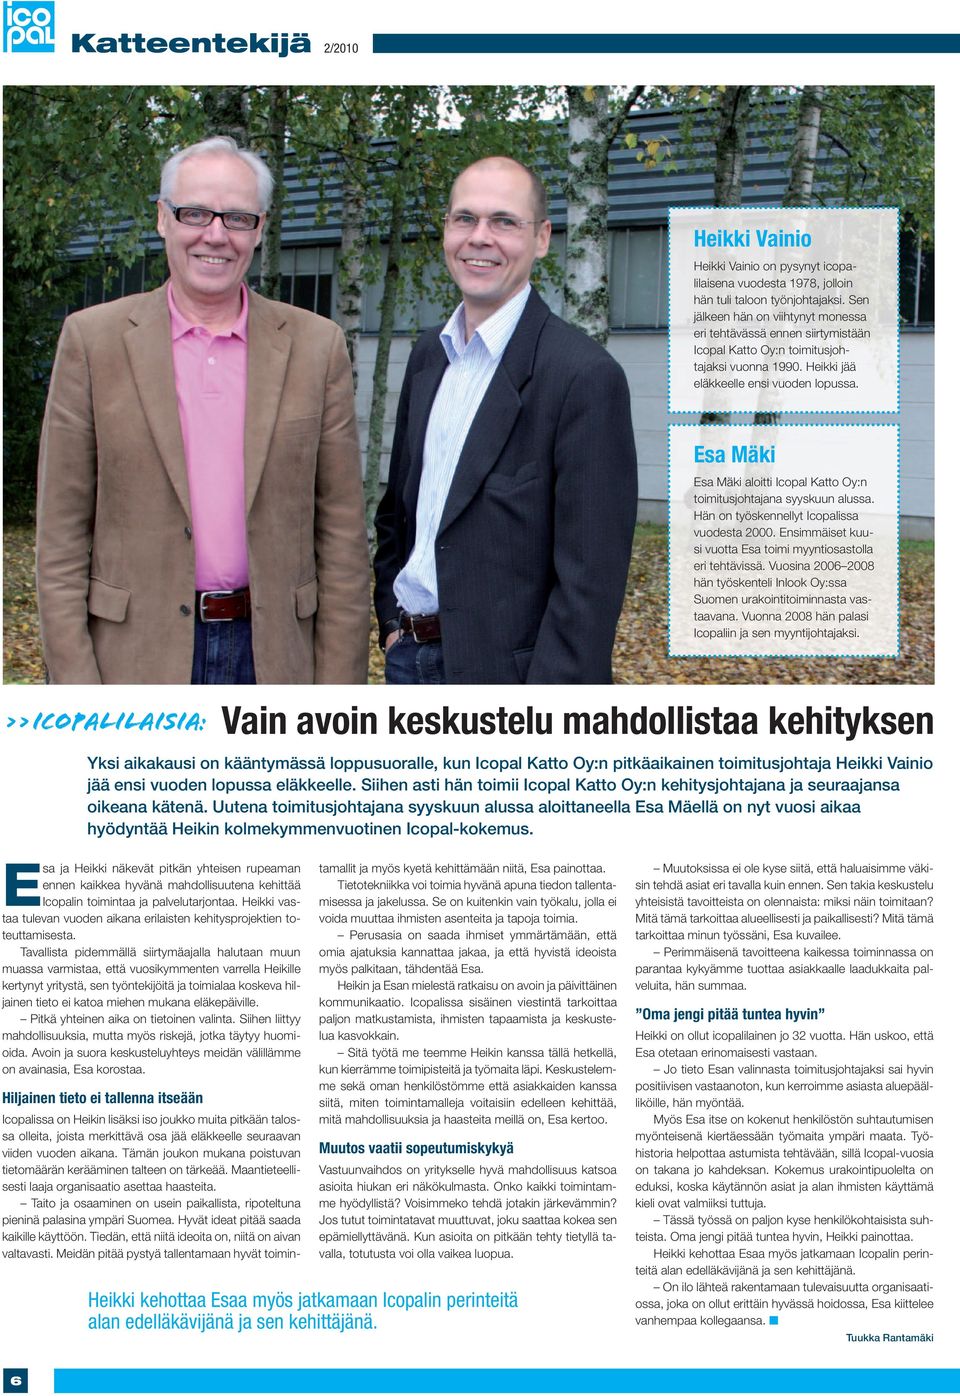 Esa Mäki Esa Mäki aloitti Icopal Katto Oy:n toimitusjohtajana syyskuun alussa. Hän on työskennellyt Icopalissa vuodesta 2000. Ensimmäiset kuusi vuotta Esa toimi myyntiosastolla eri tehtävissä.